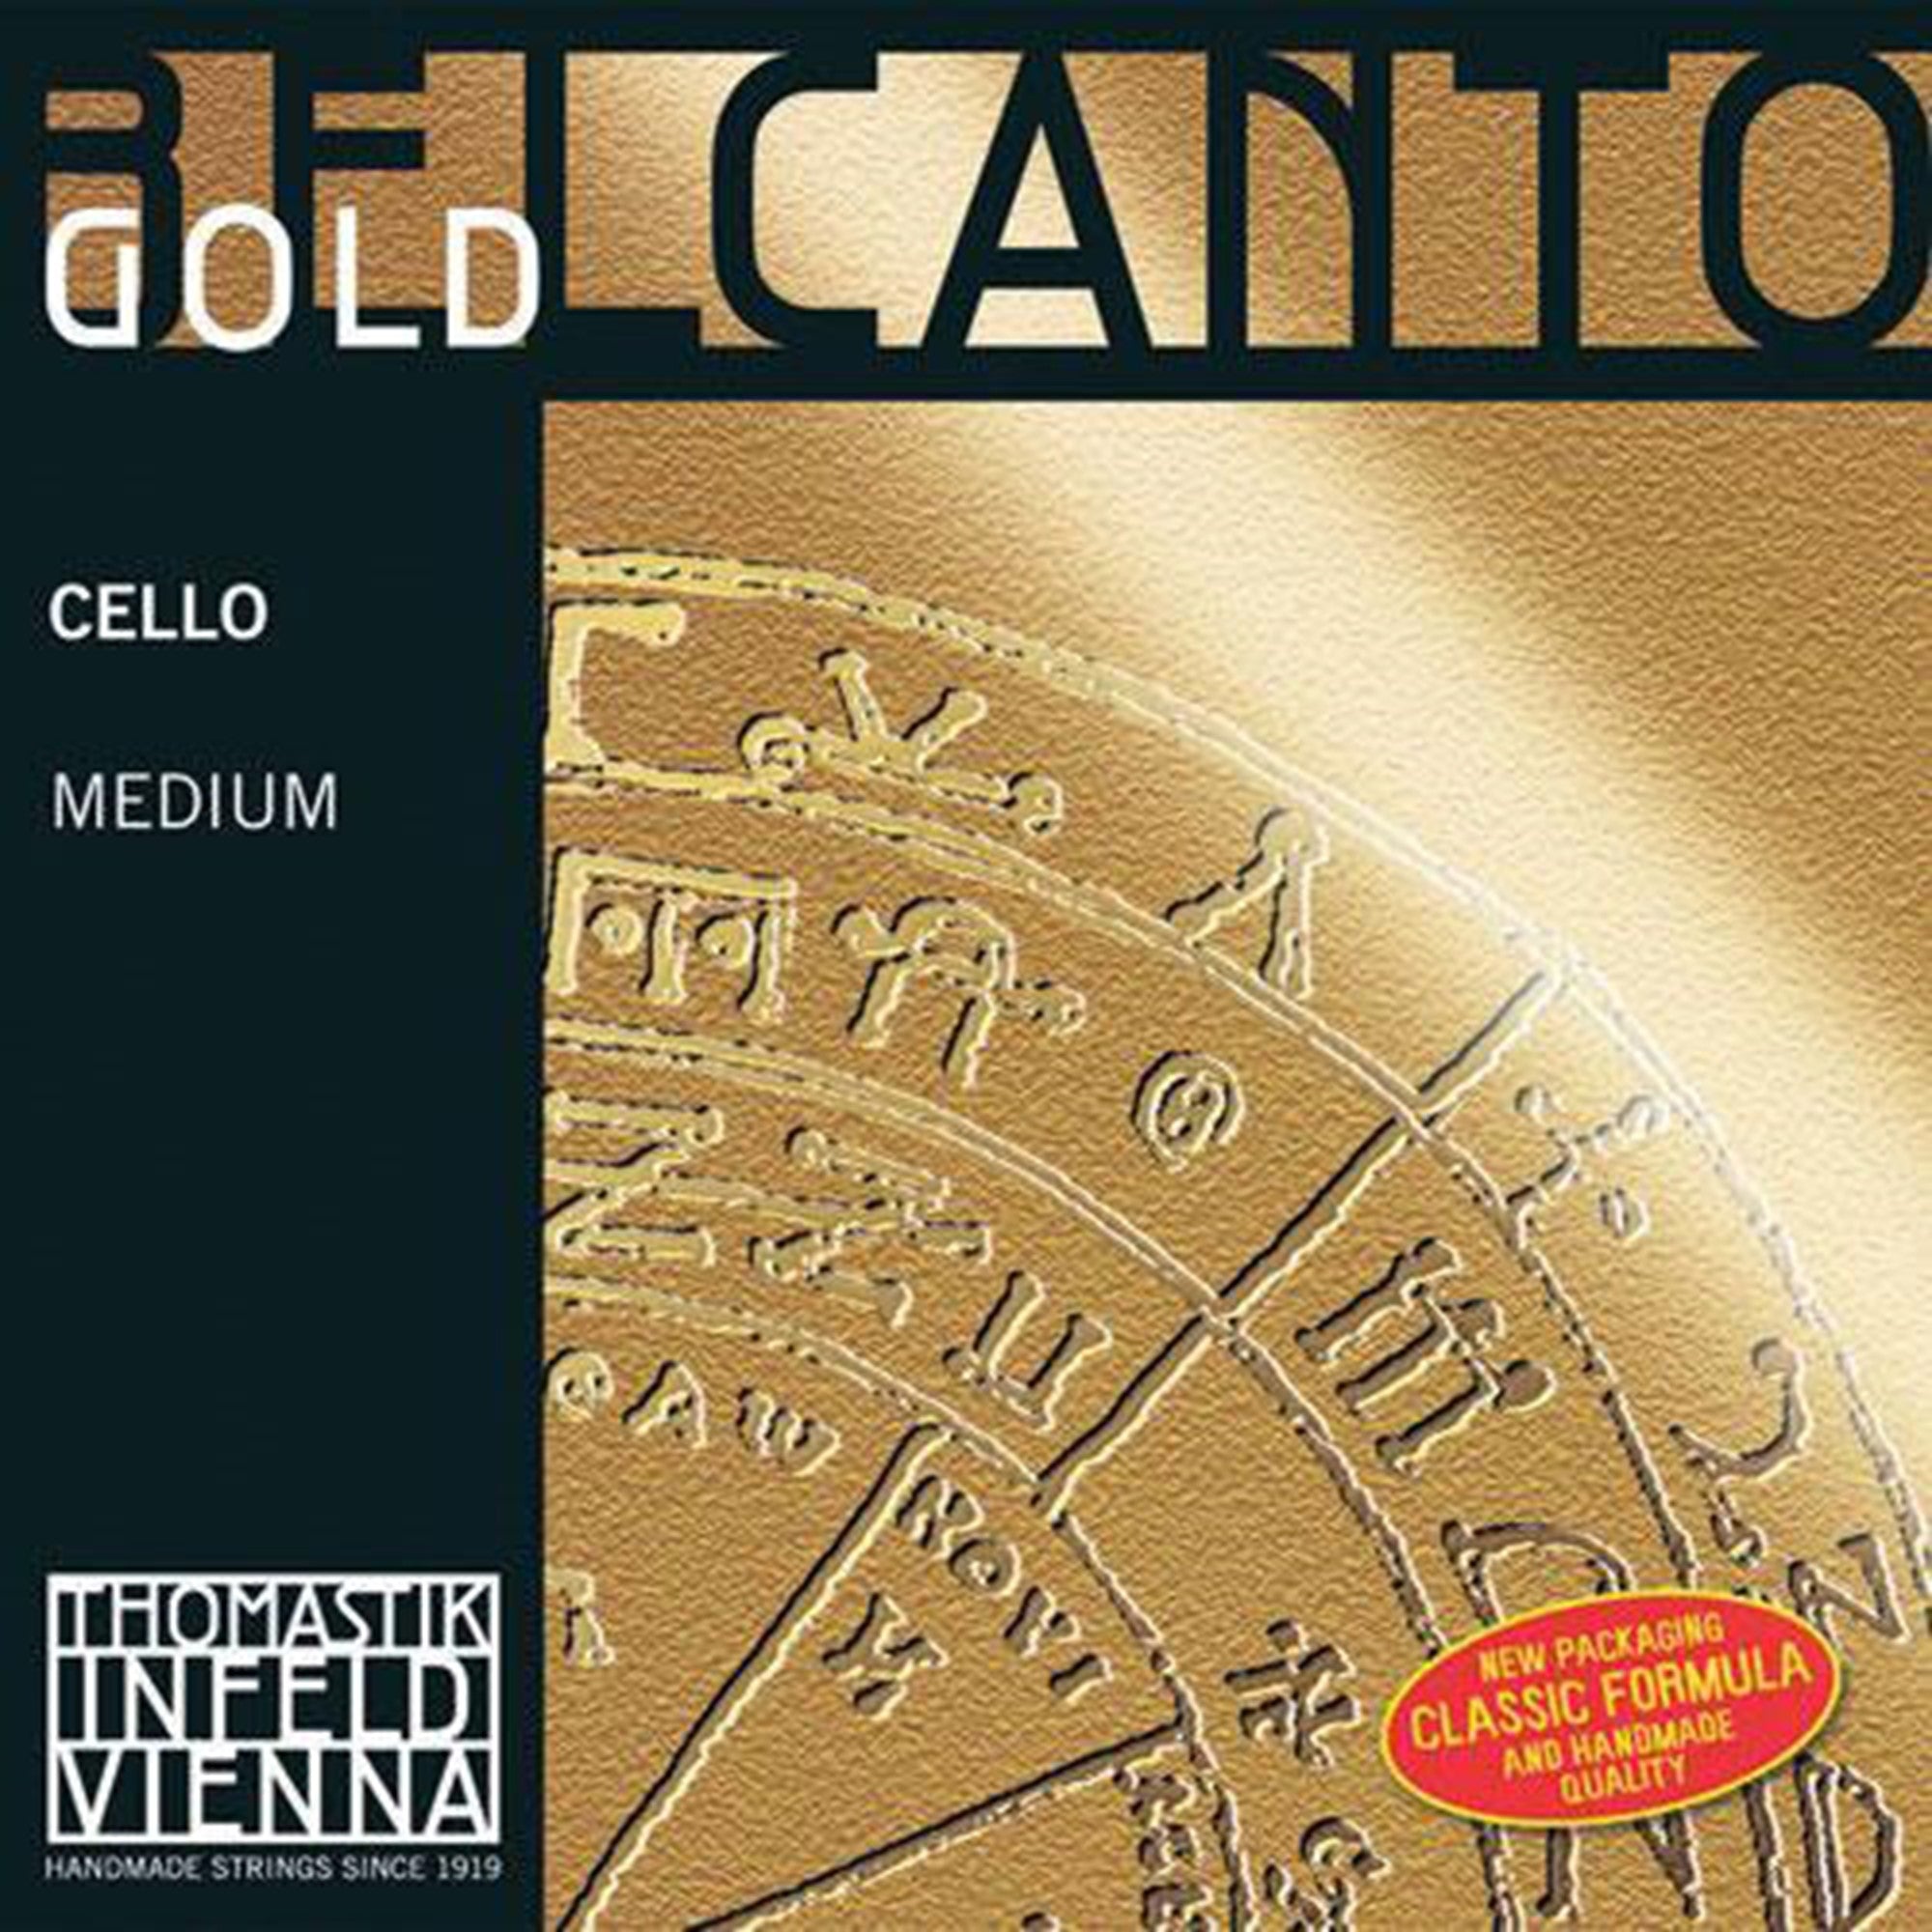 Thomastik Belcanto Gold Cello G String